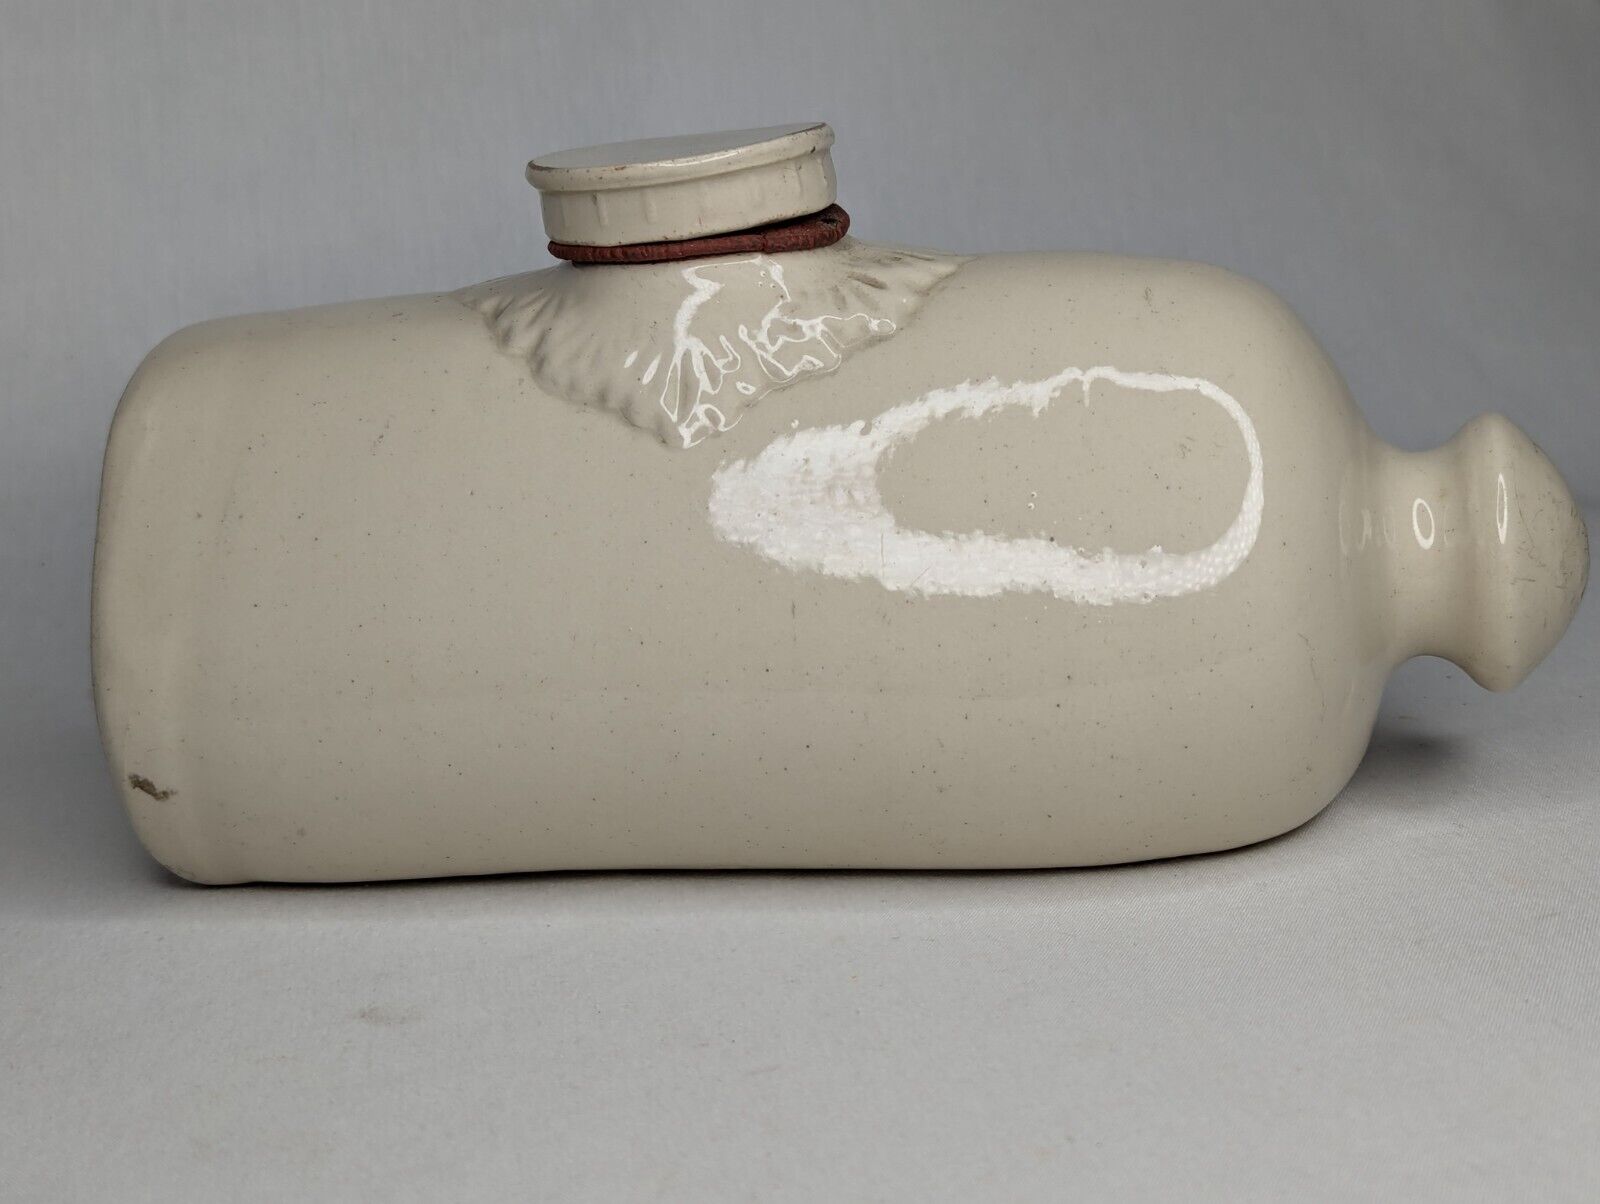 Antique Lovatt\'s Langley Ware Ceramic Foot Warmer Made in England